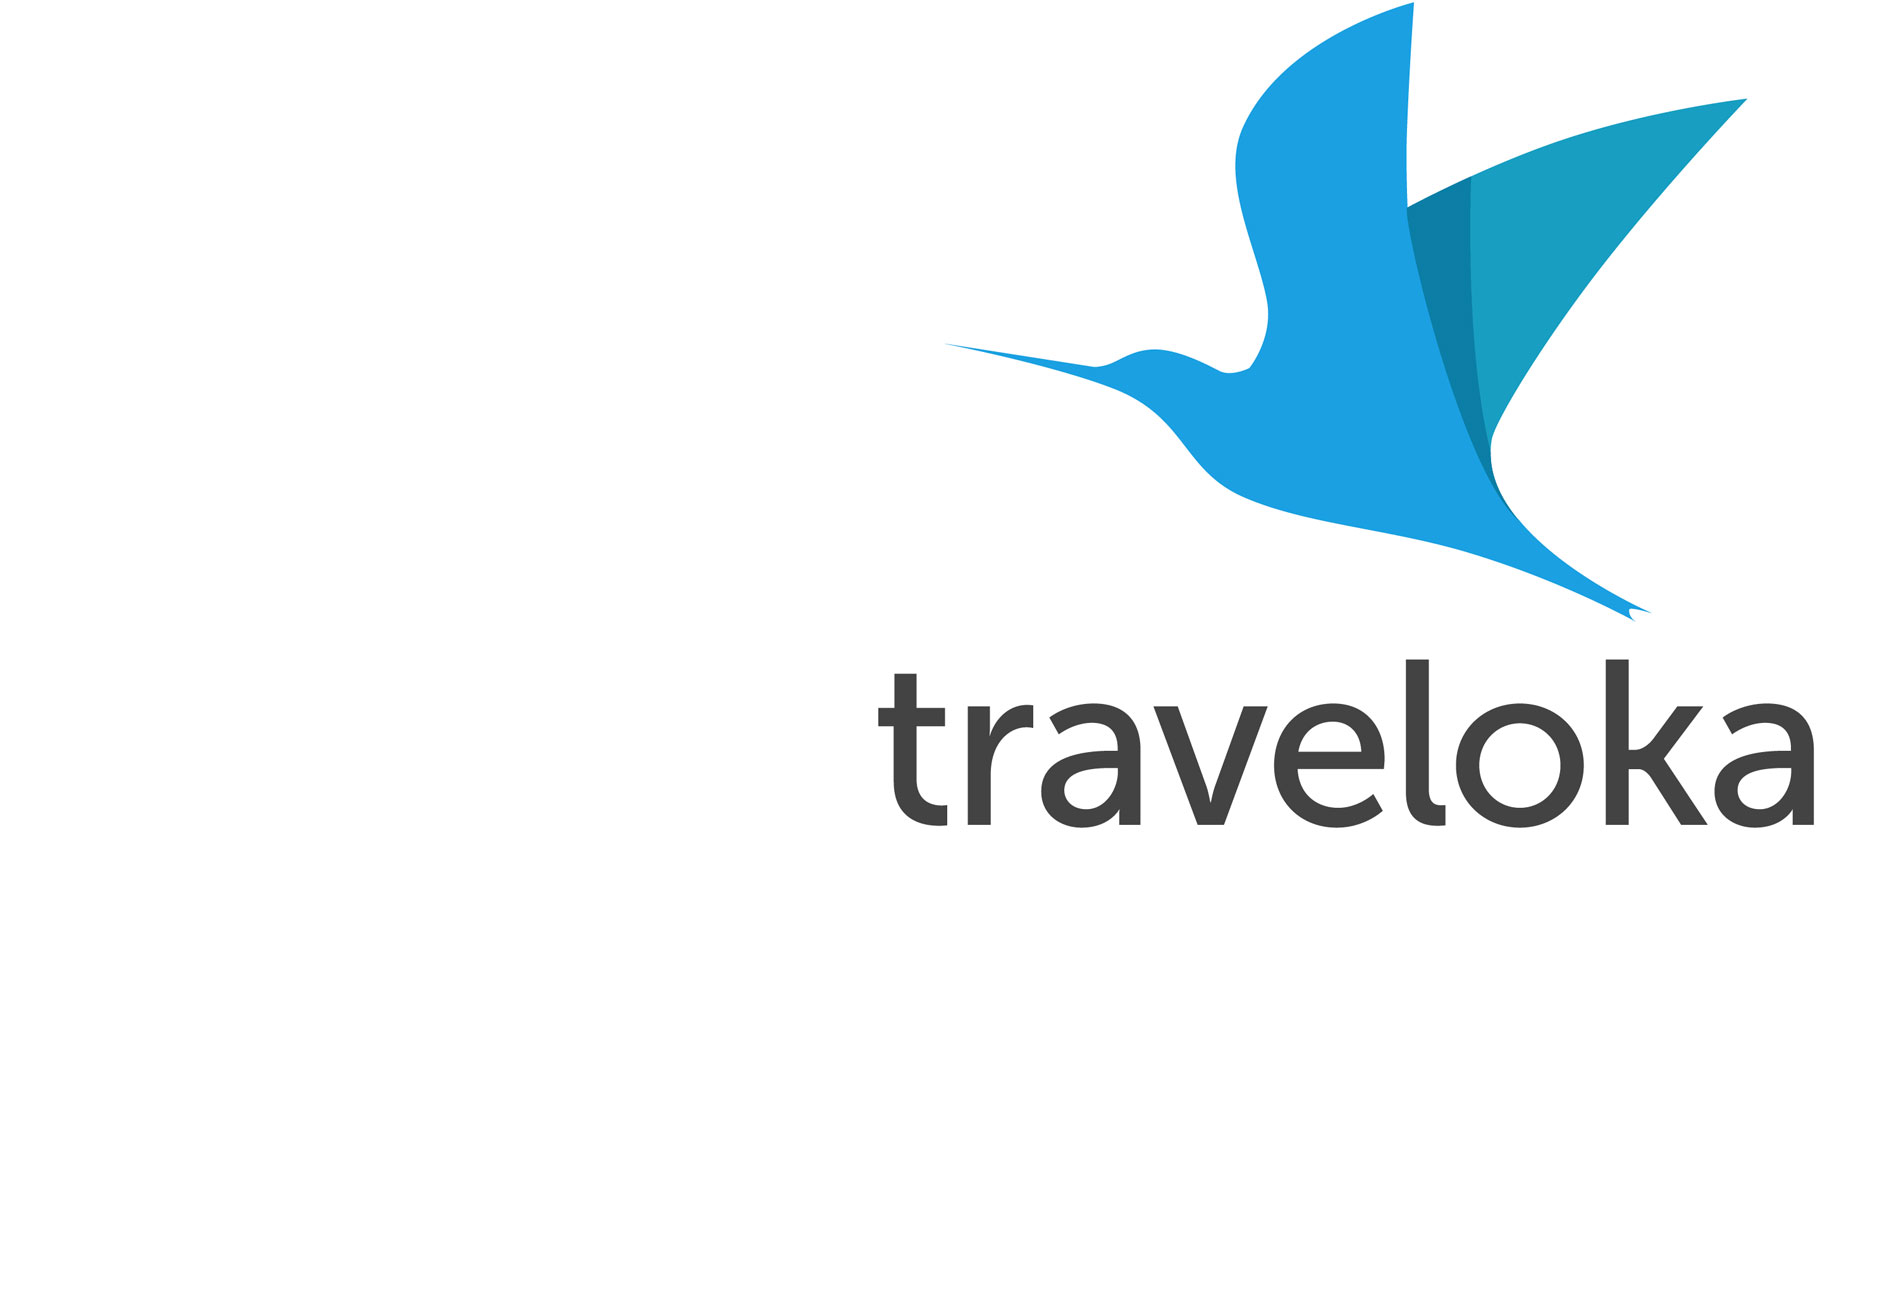  Traveloka Logos